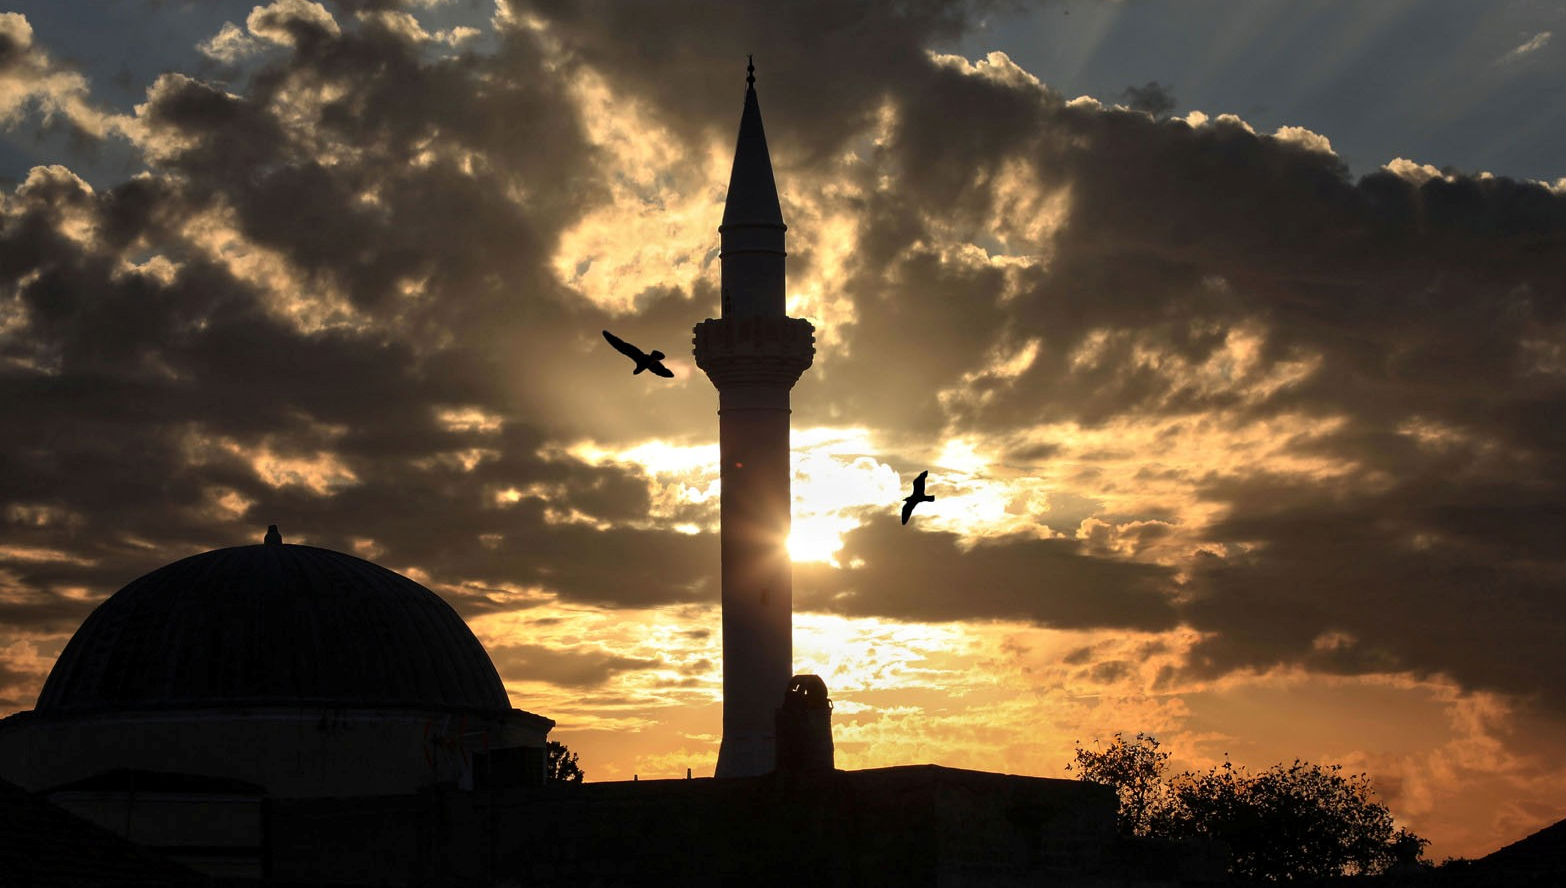 Κινούνται επικίνδυνα οι πράκτορες της ΜΙΤ: Συνέδριο για την “καταπίεση” των “Τούρκων” της Ρόδου και της Κω